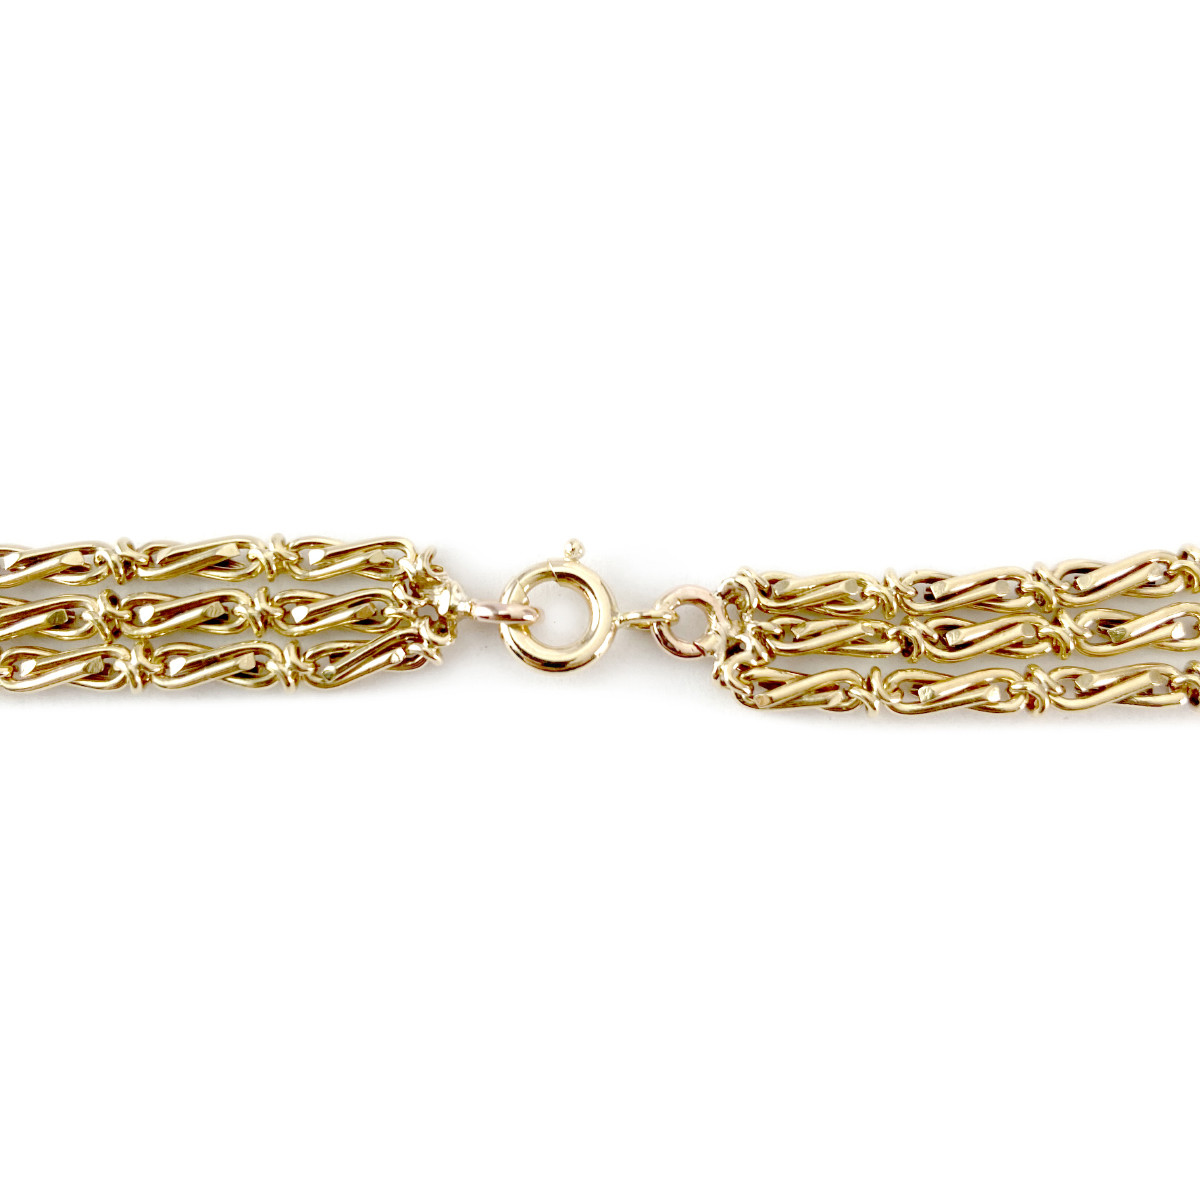 Collier triple rang d'occasion or 750 jaune perles de culture de Chine 45 à 50 cm - vue 3